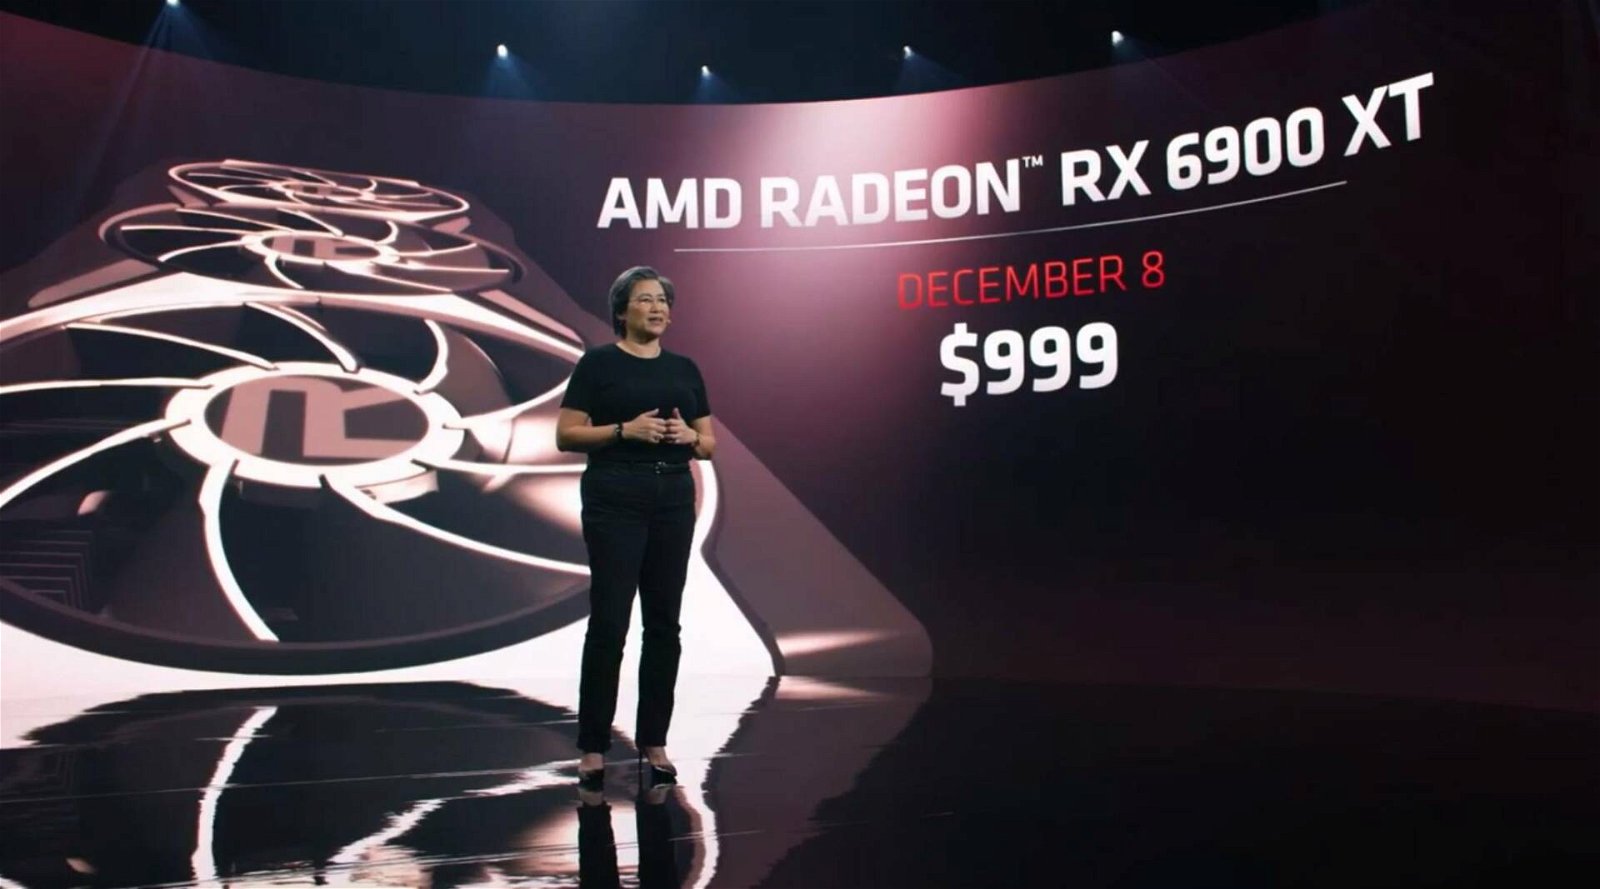 Immagine di AMD Radeon RX 6900 XT ha un clock massimo di 3,0GHz